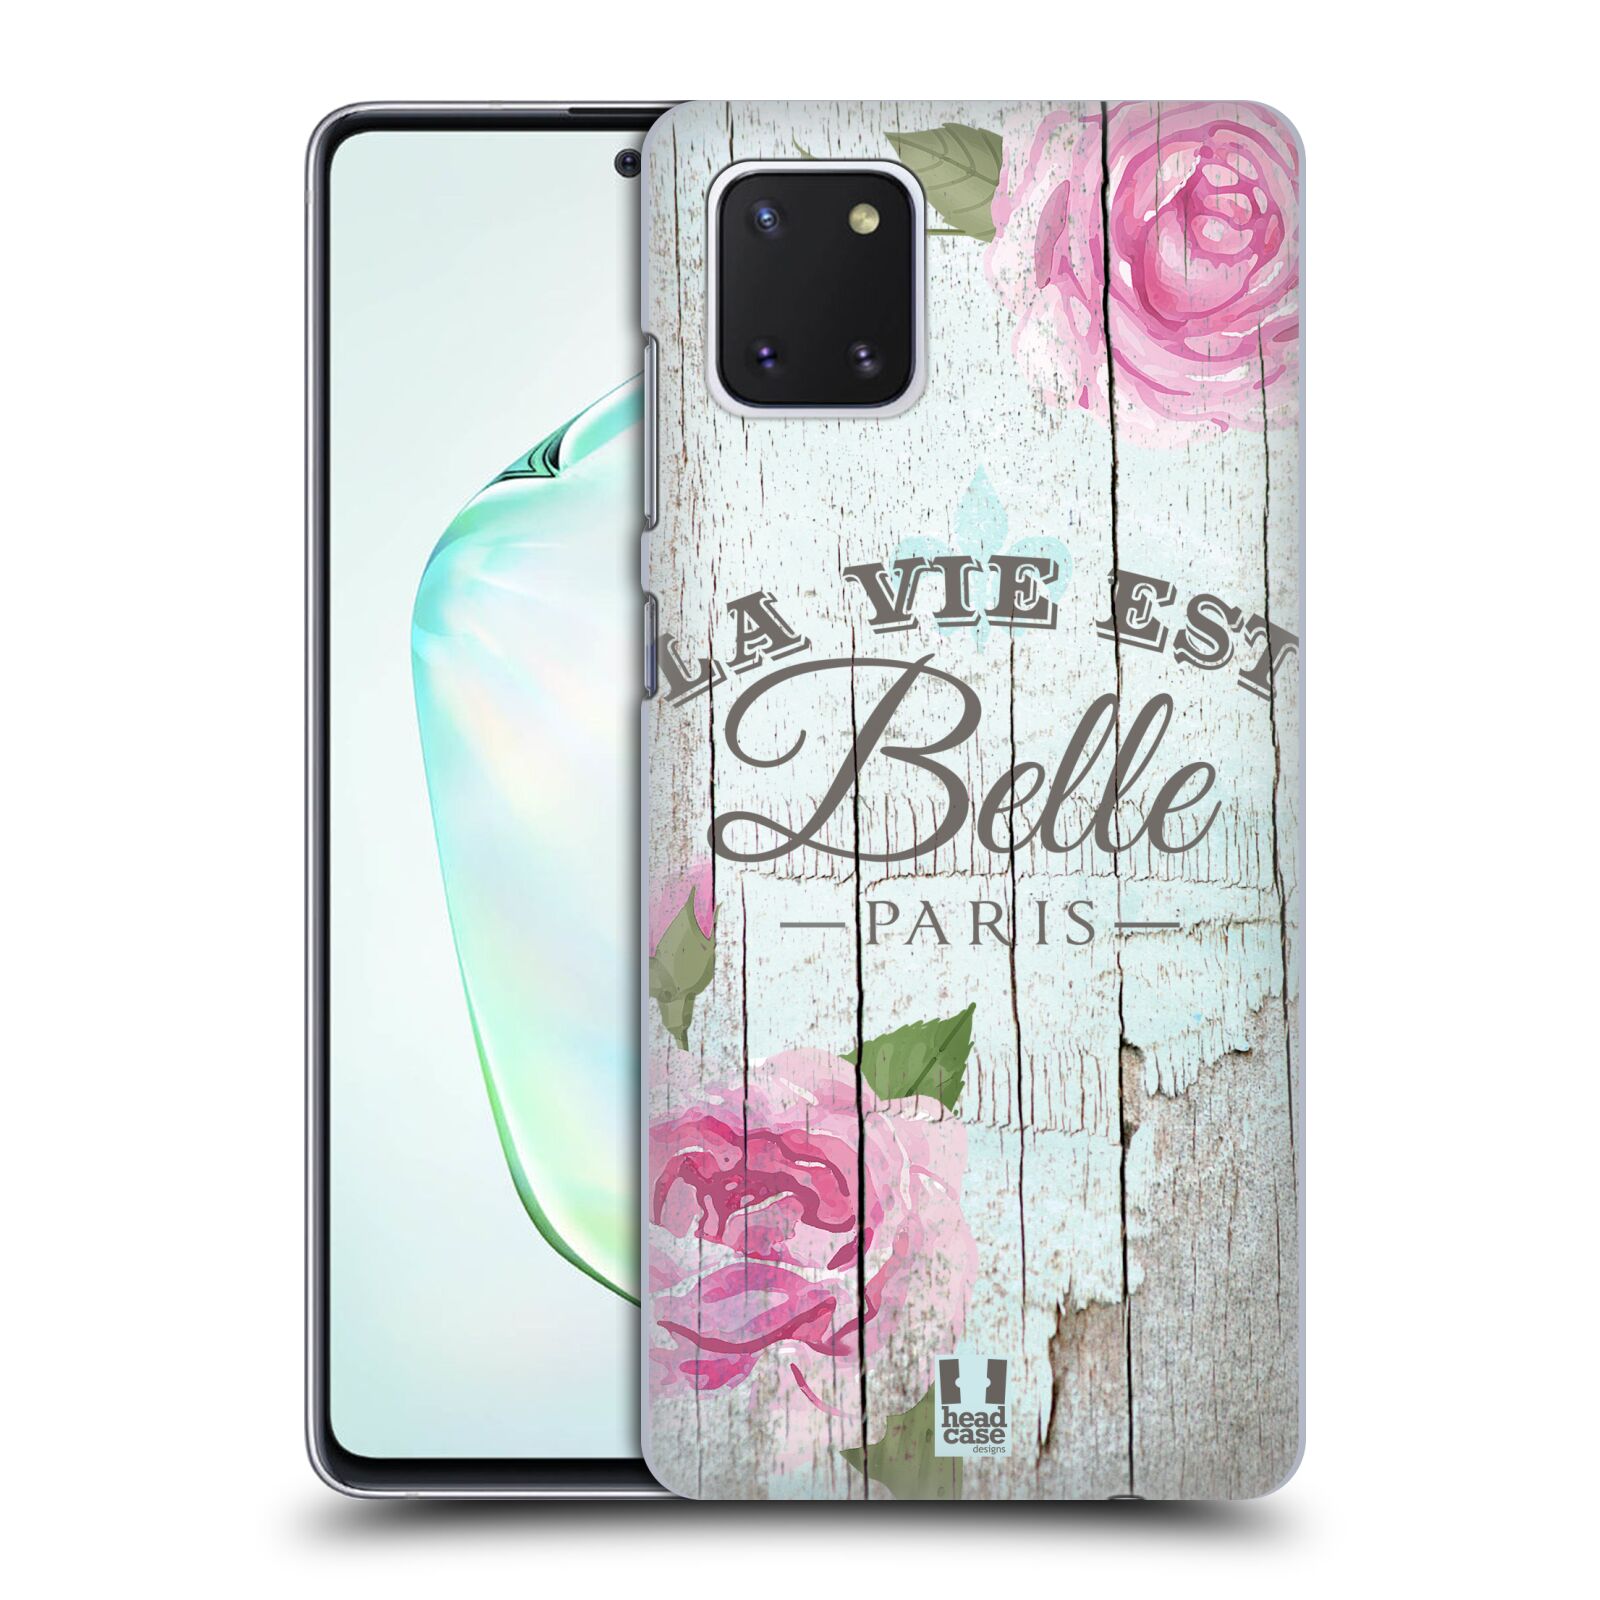 Zadní obal pro mobil Samsung Galaxy Note 10 Lite - HEAD CASE - Francouzský motiv La Vie Est Belle